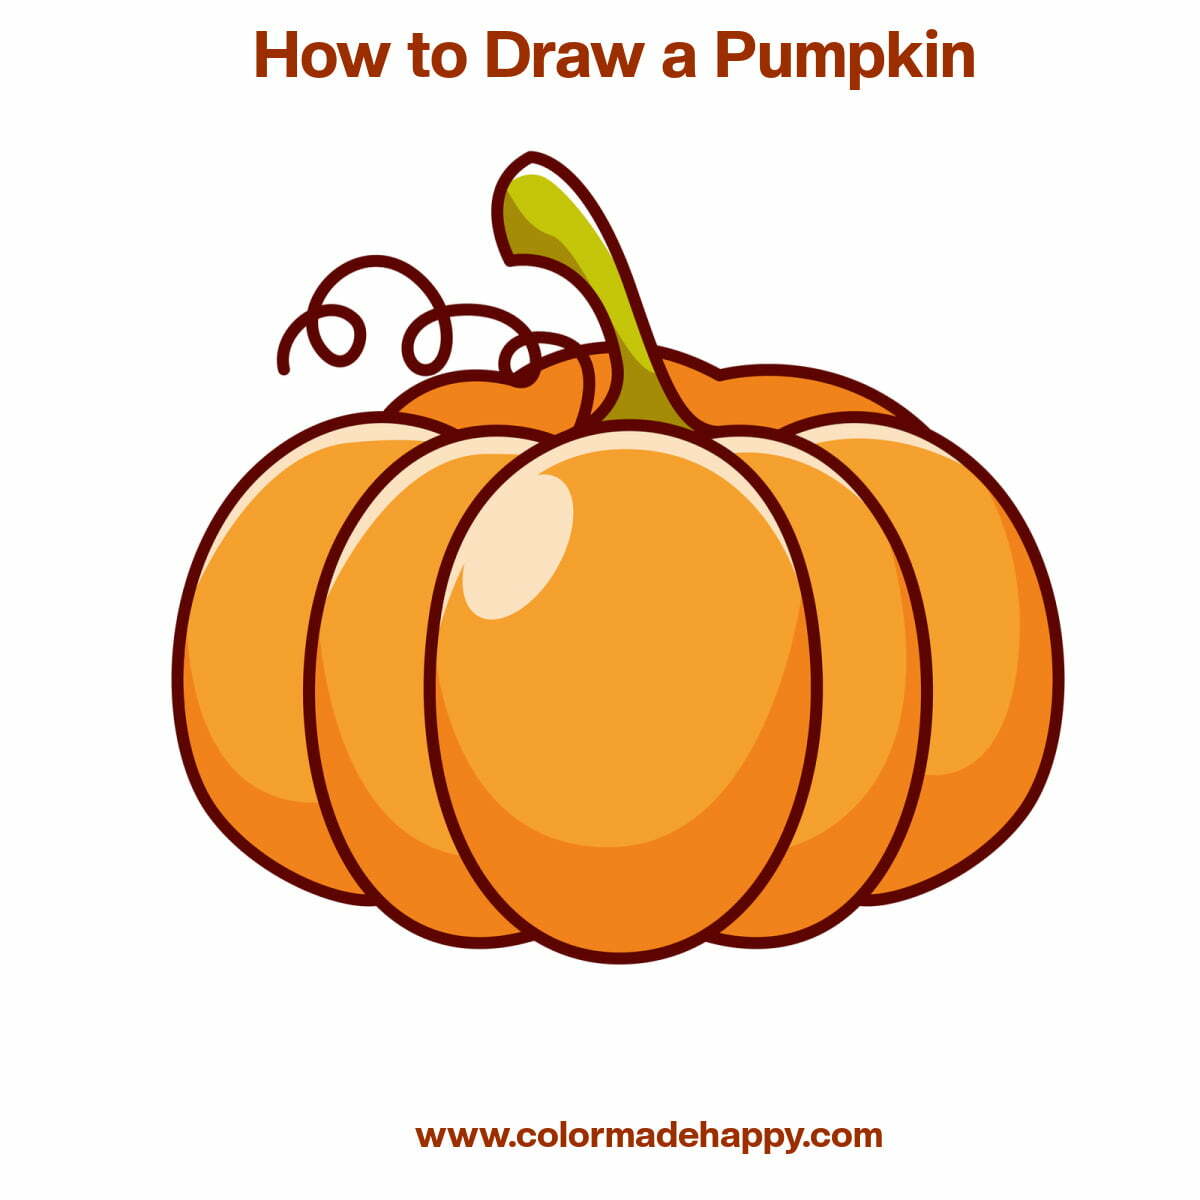 Pumpkin Drawing Images - Free Download on Freepik